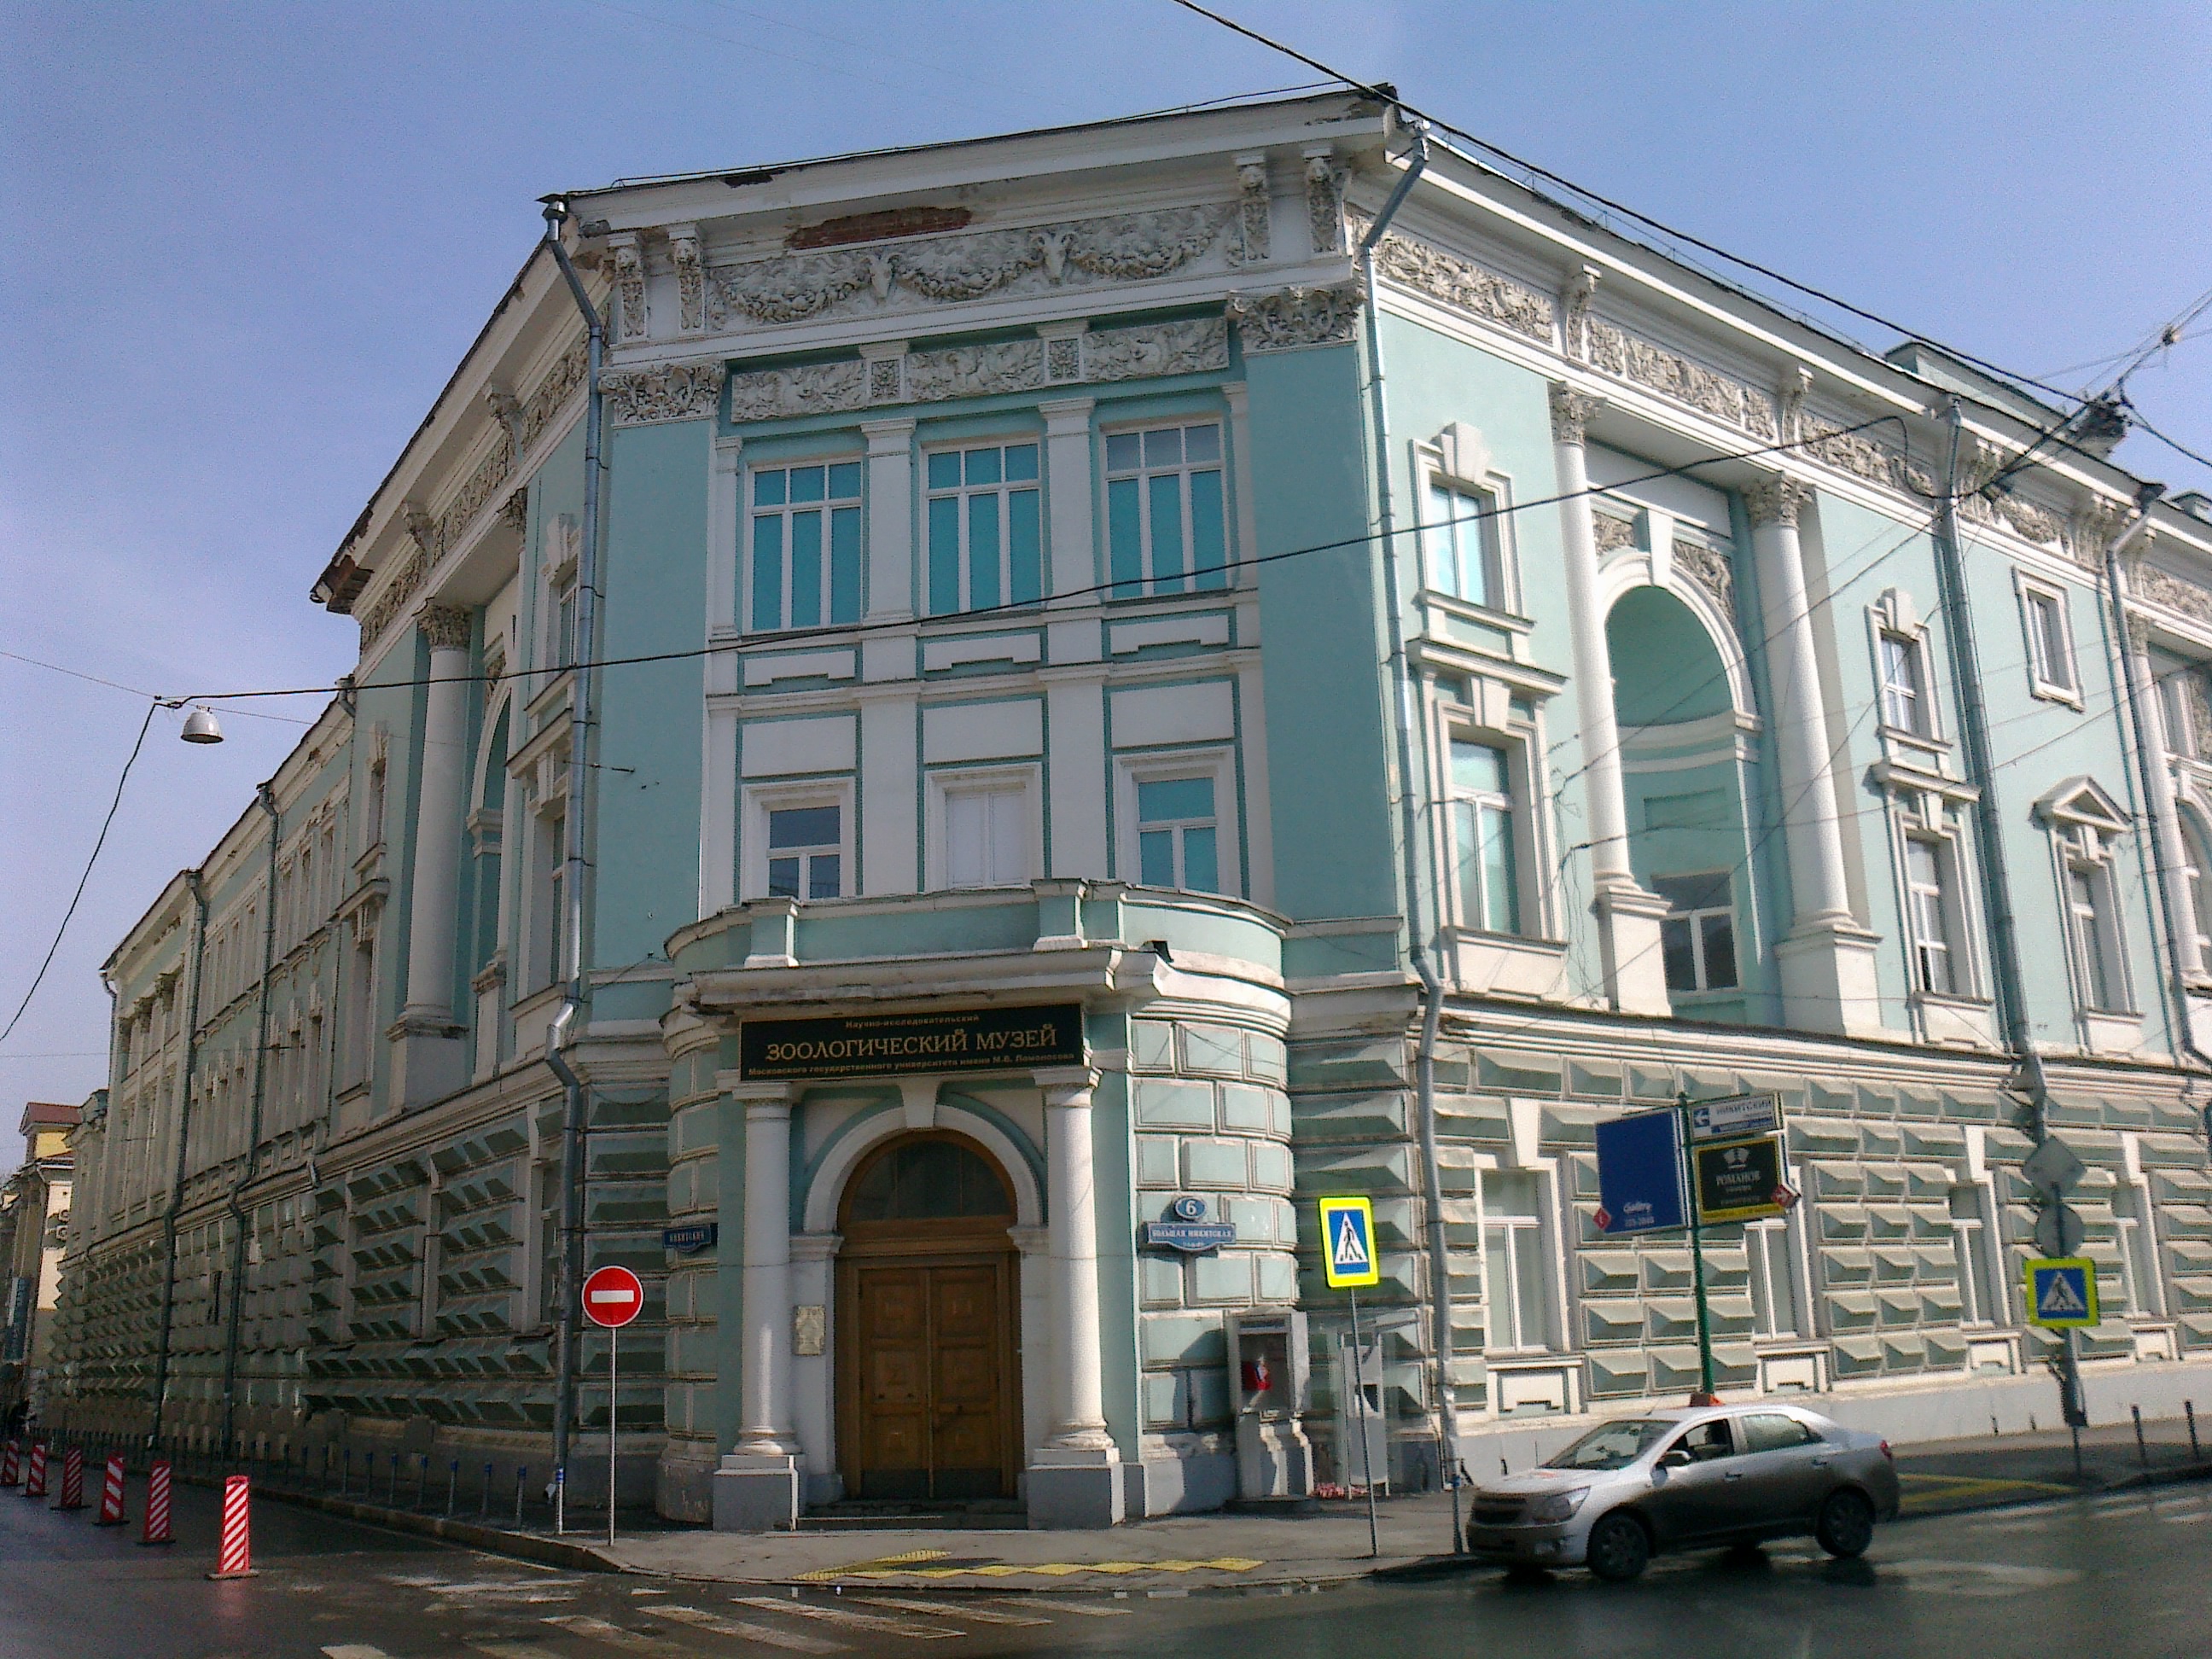 Научно-исследовательский музей Ломоносова